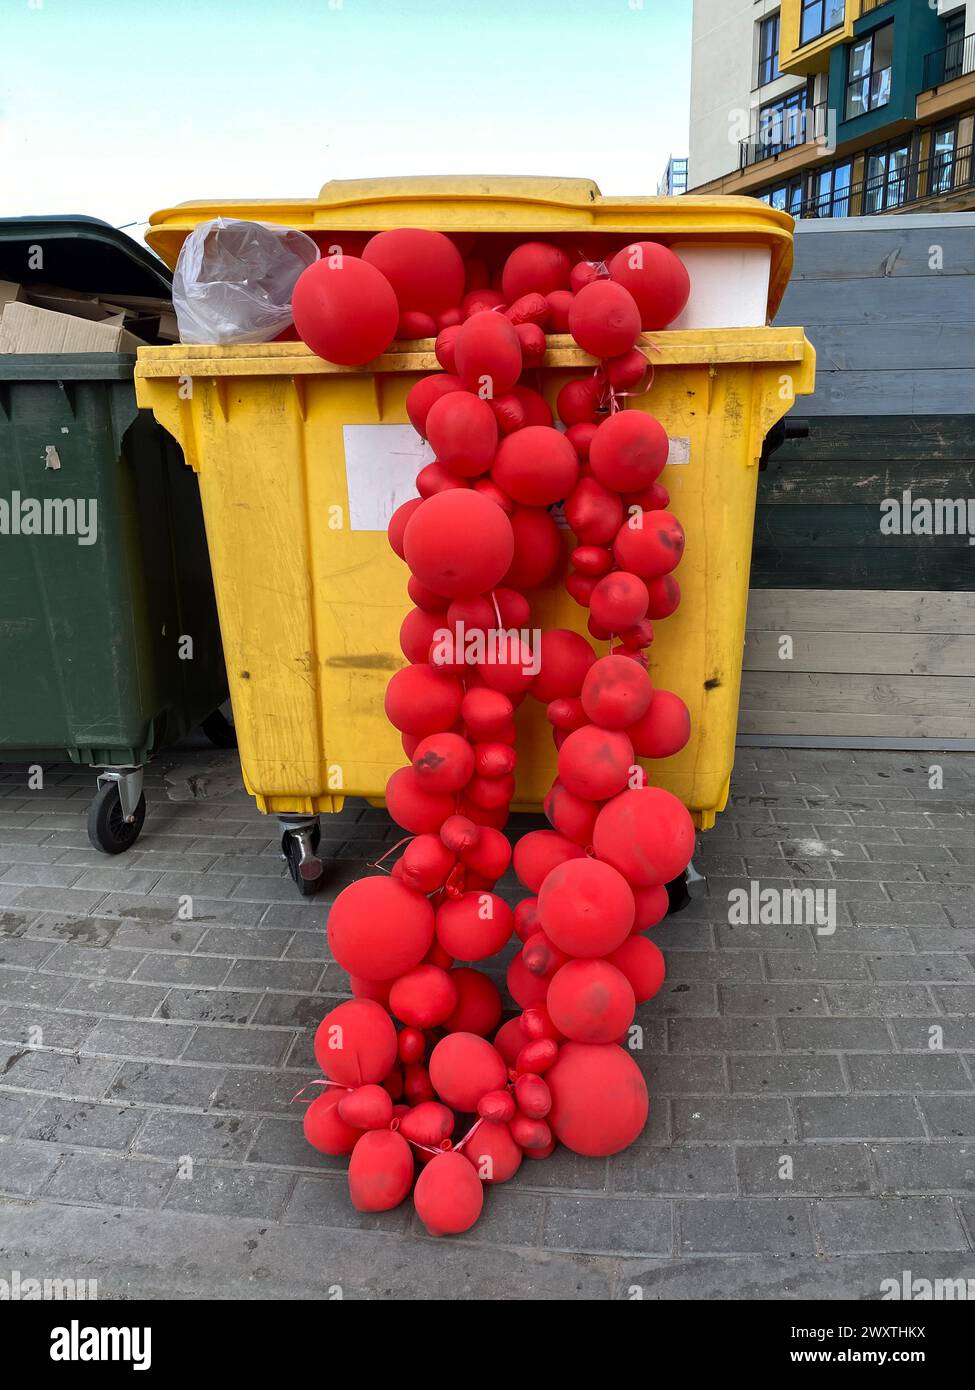 Guirlandes de ballons rouges dans une benne à ordures, foyer sélectif. Décorations usagées jetées. Concept de la mélancolie après la fête de vacances Banque D'Images